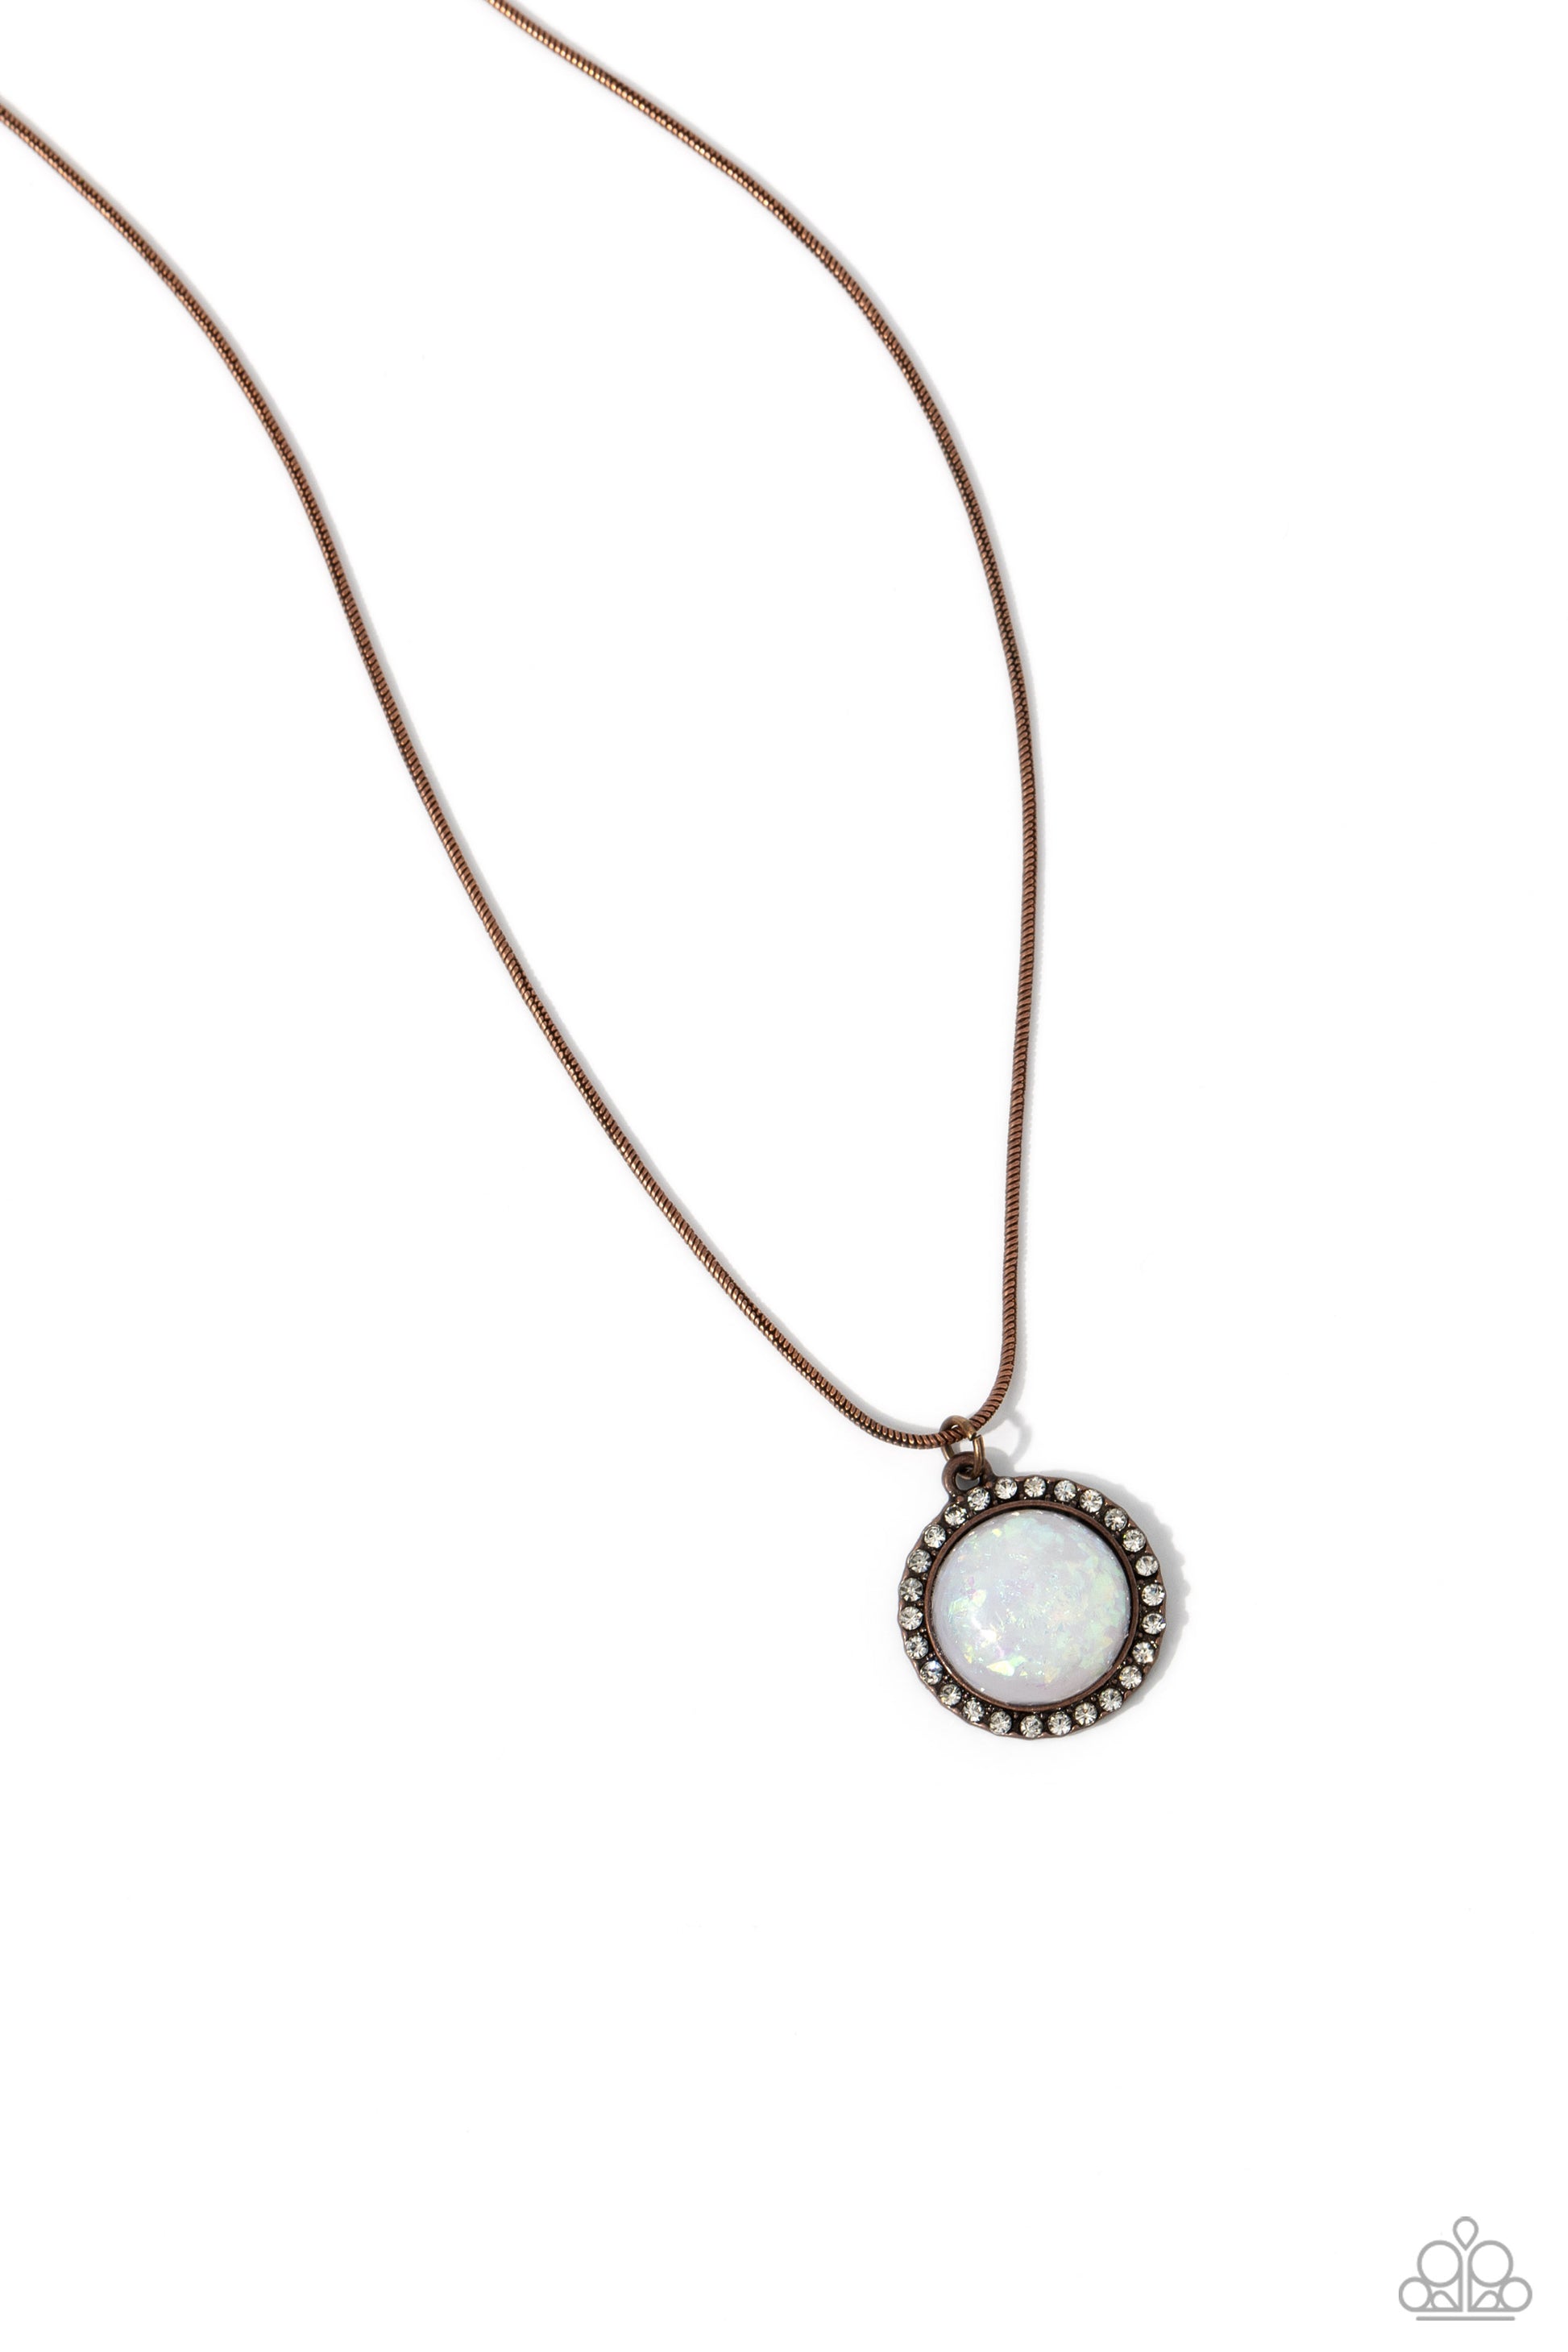 Pixie Potential - copper - Paparazzi necklace